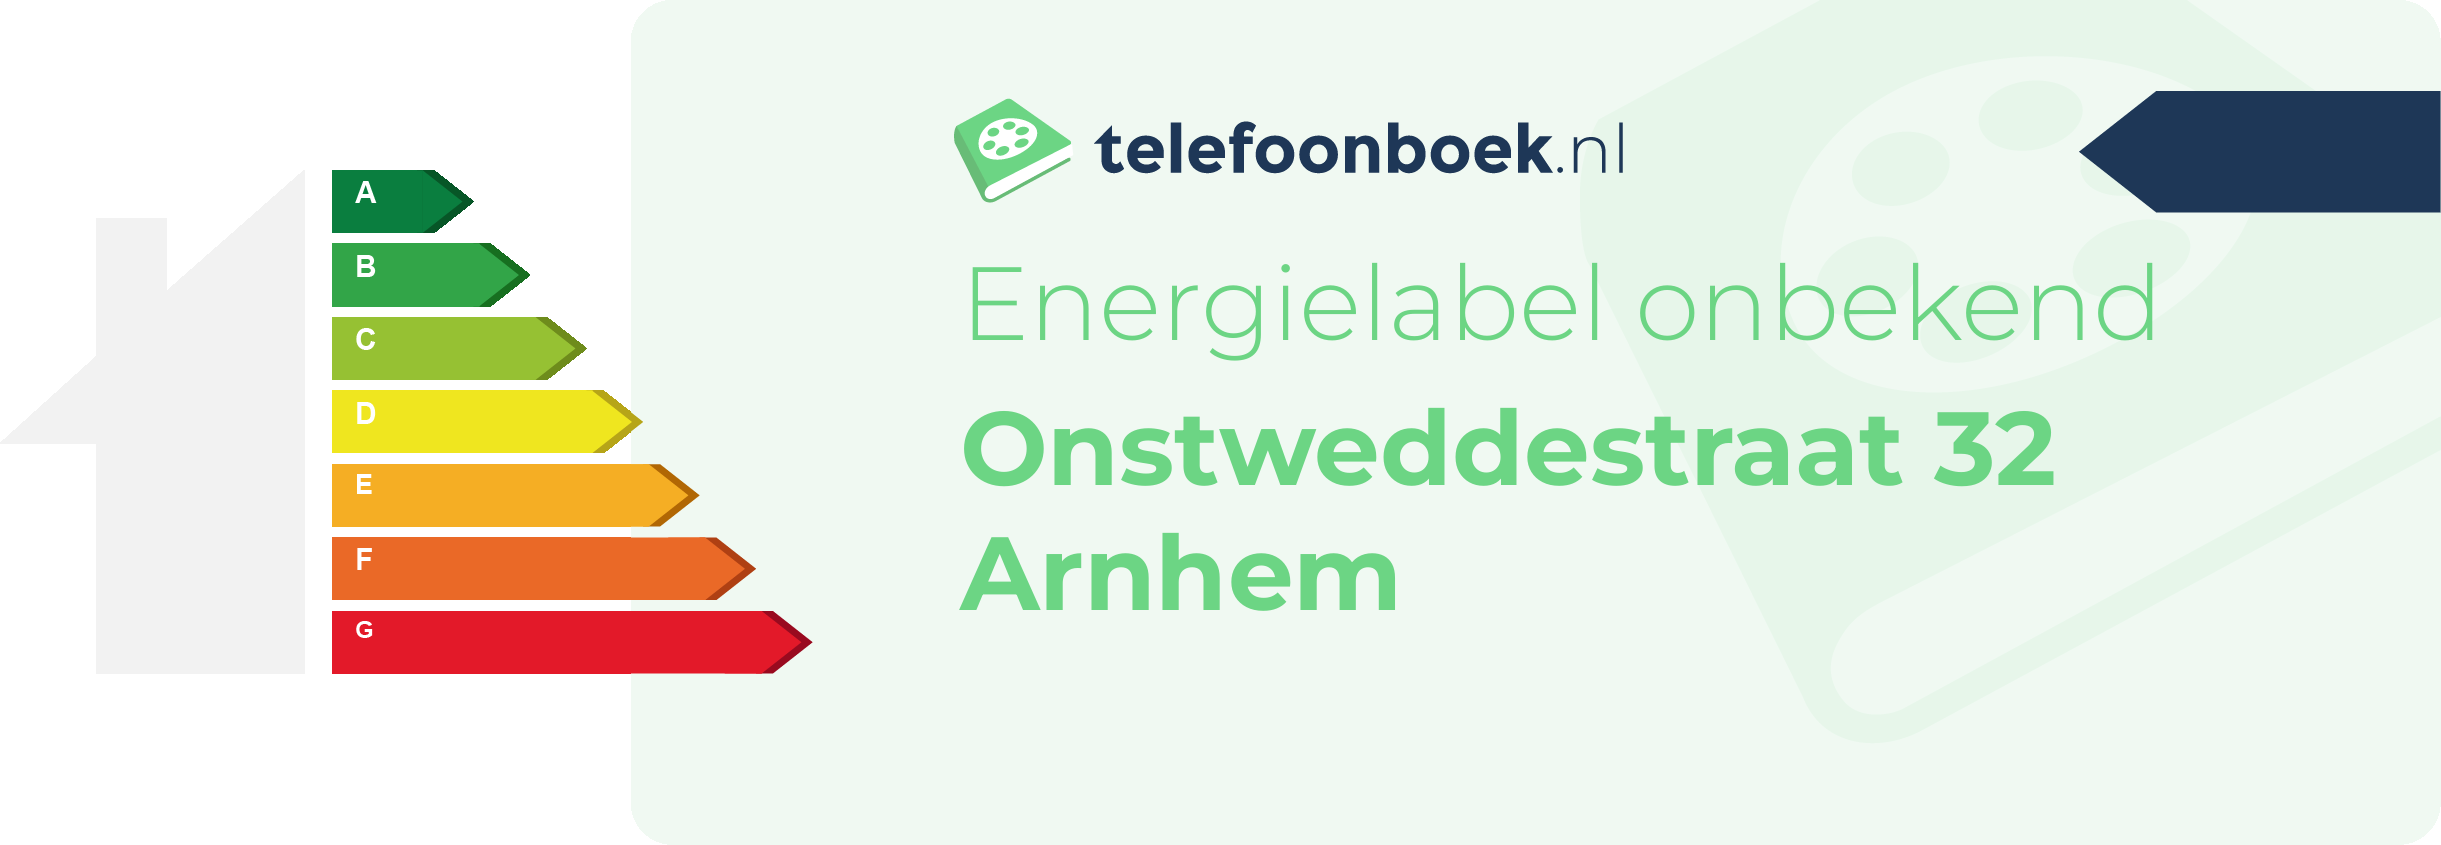 Energielabel Onstweddestraat 32 Arnhem